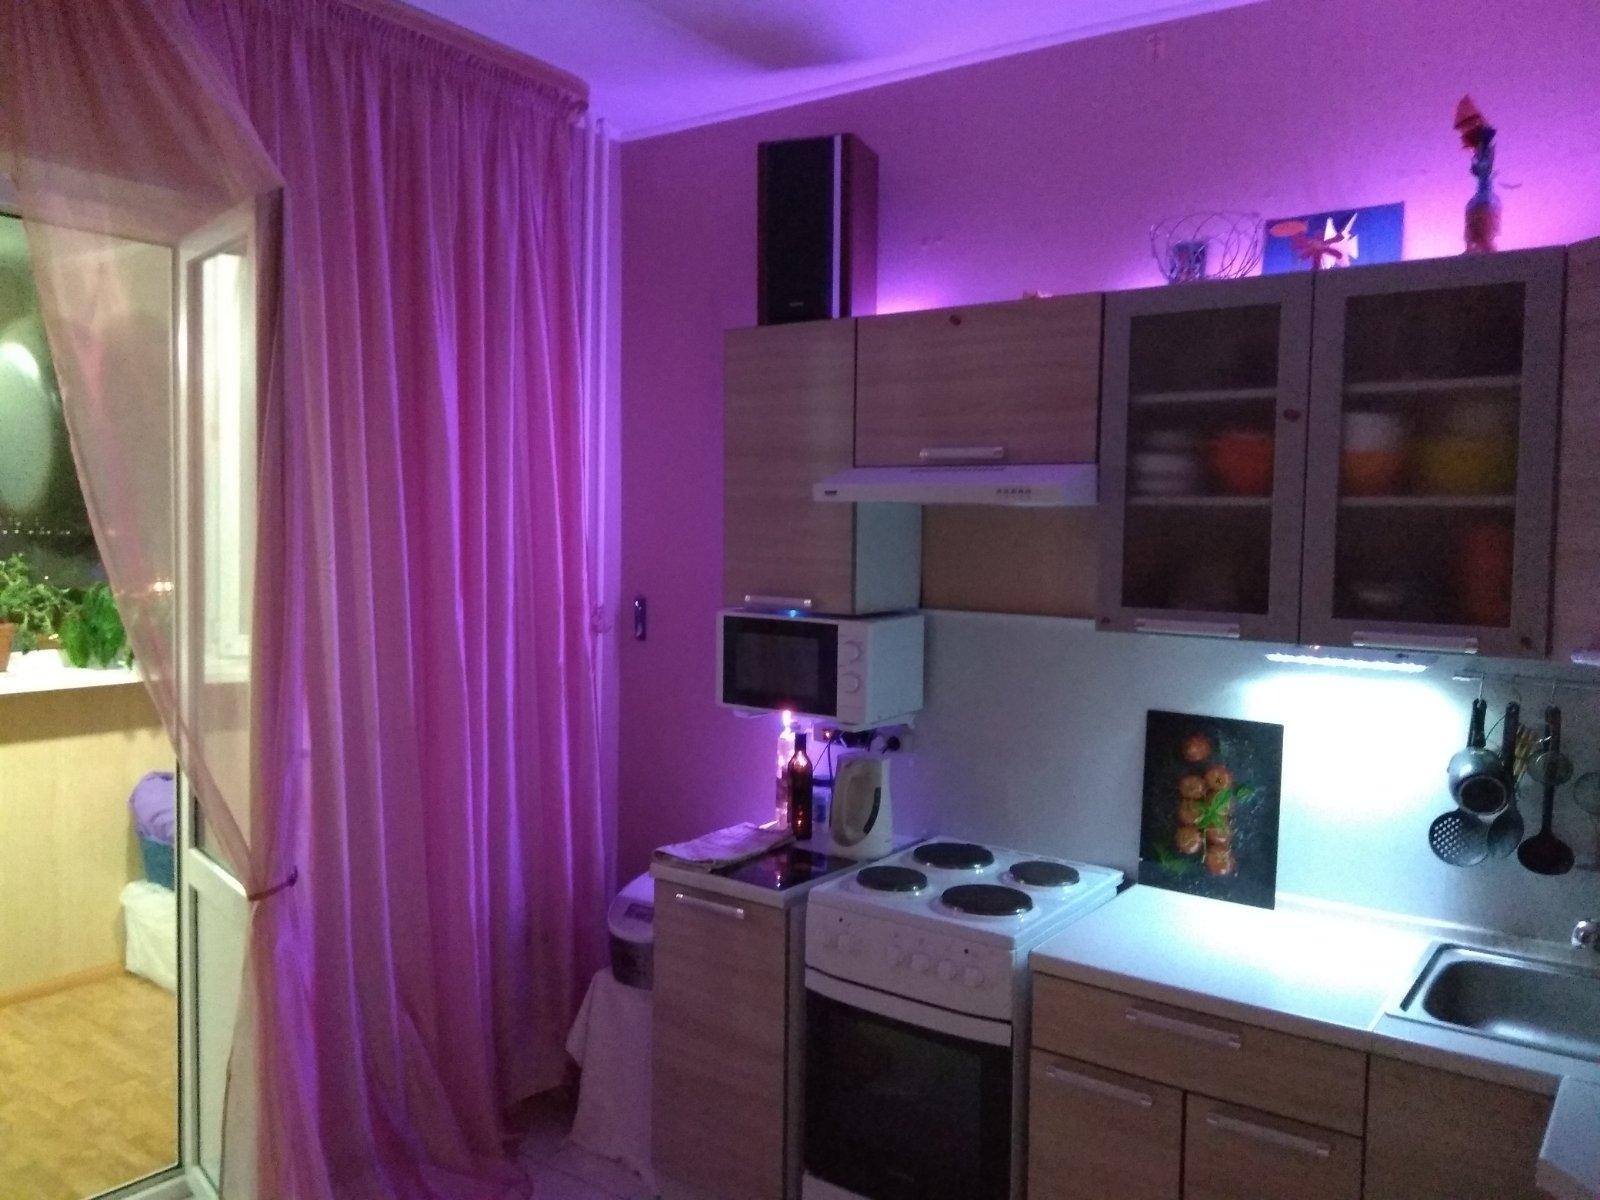 Авито Сургут недвижимость. Кухня квартир в Сургуте фото. Квартиры в Сургуте на авито студии продажа.